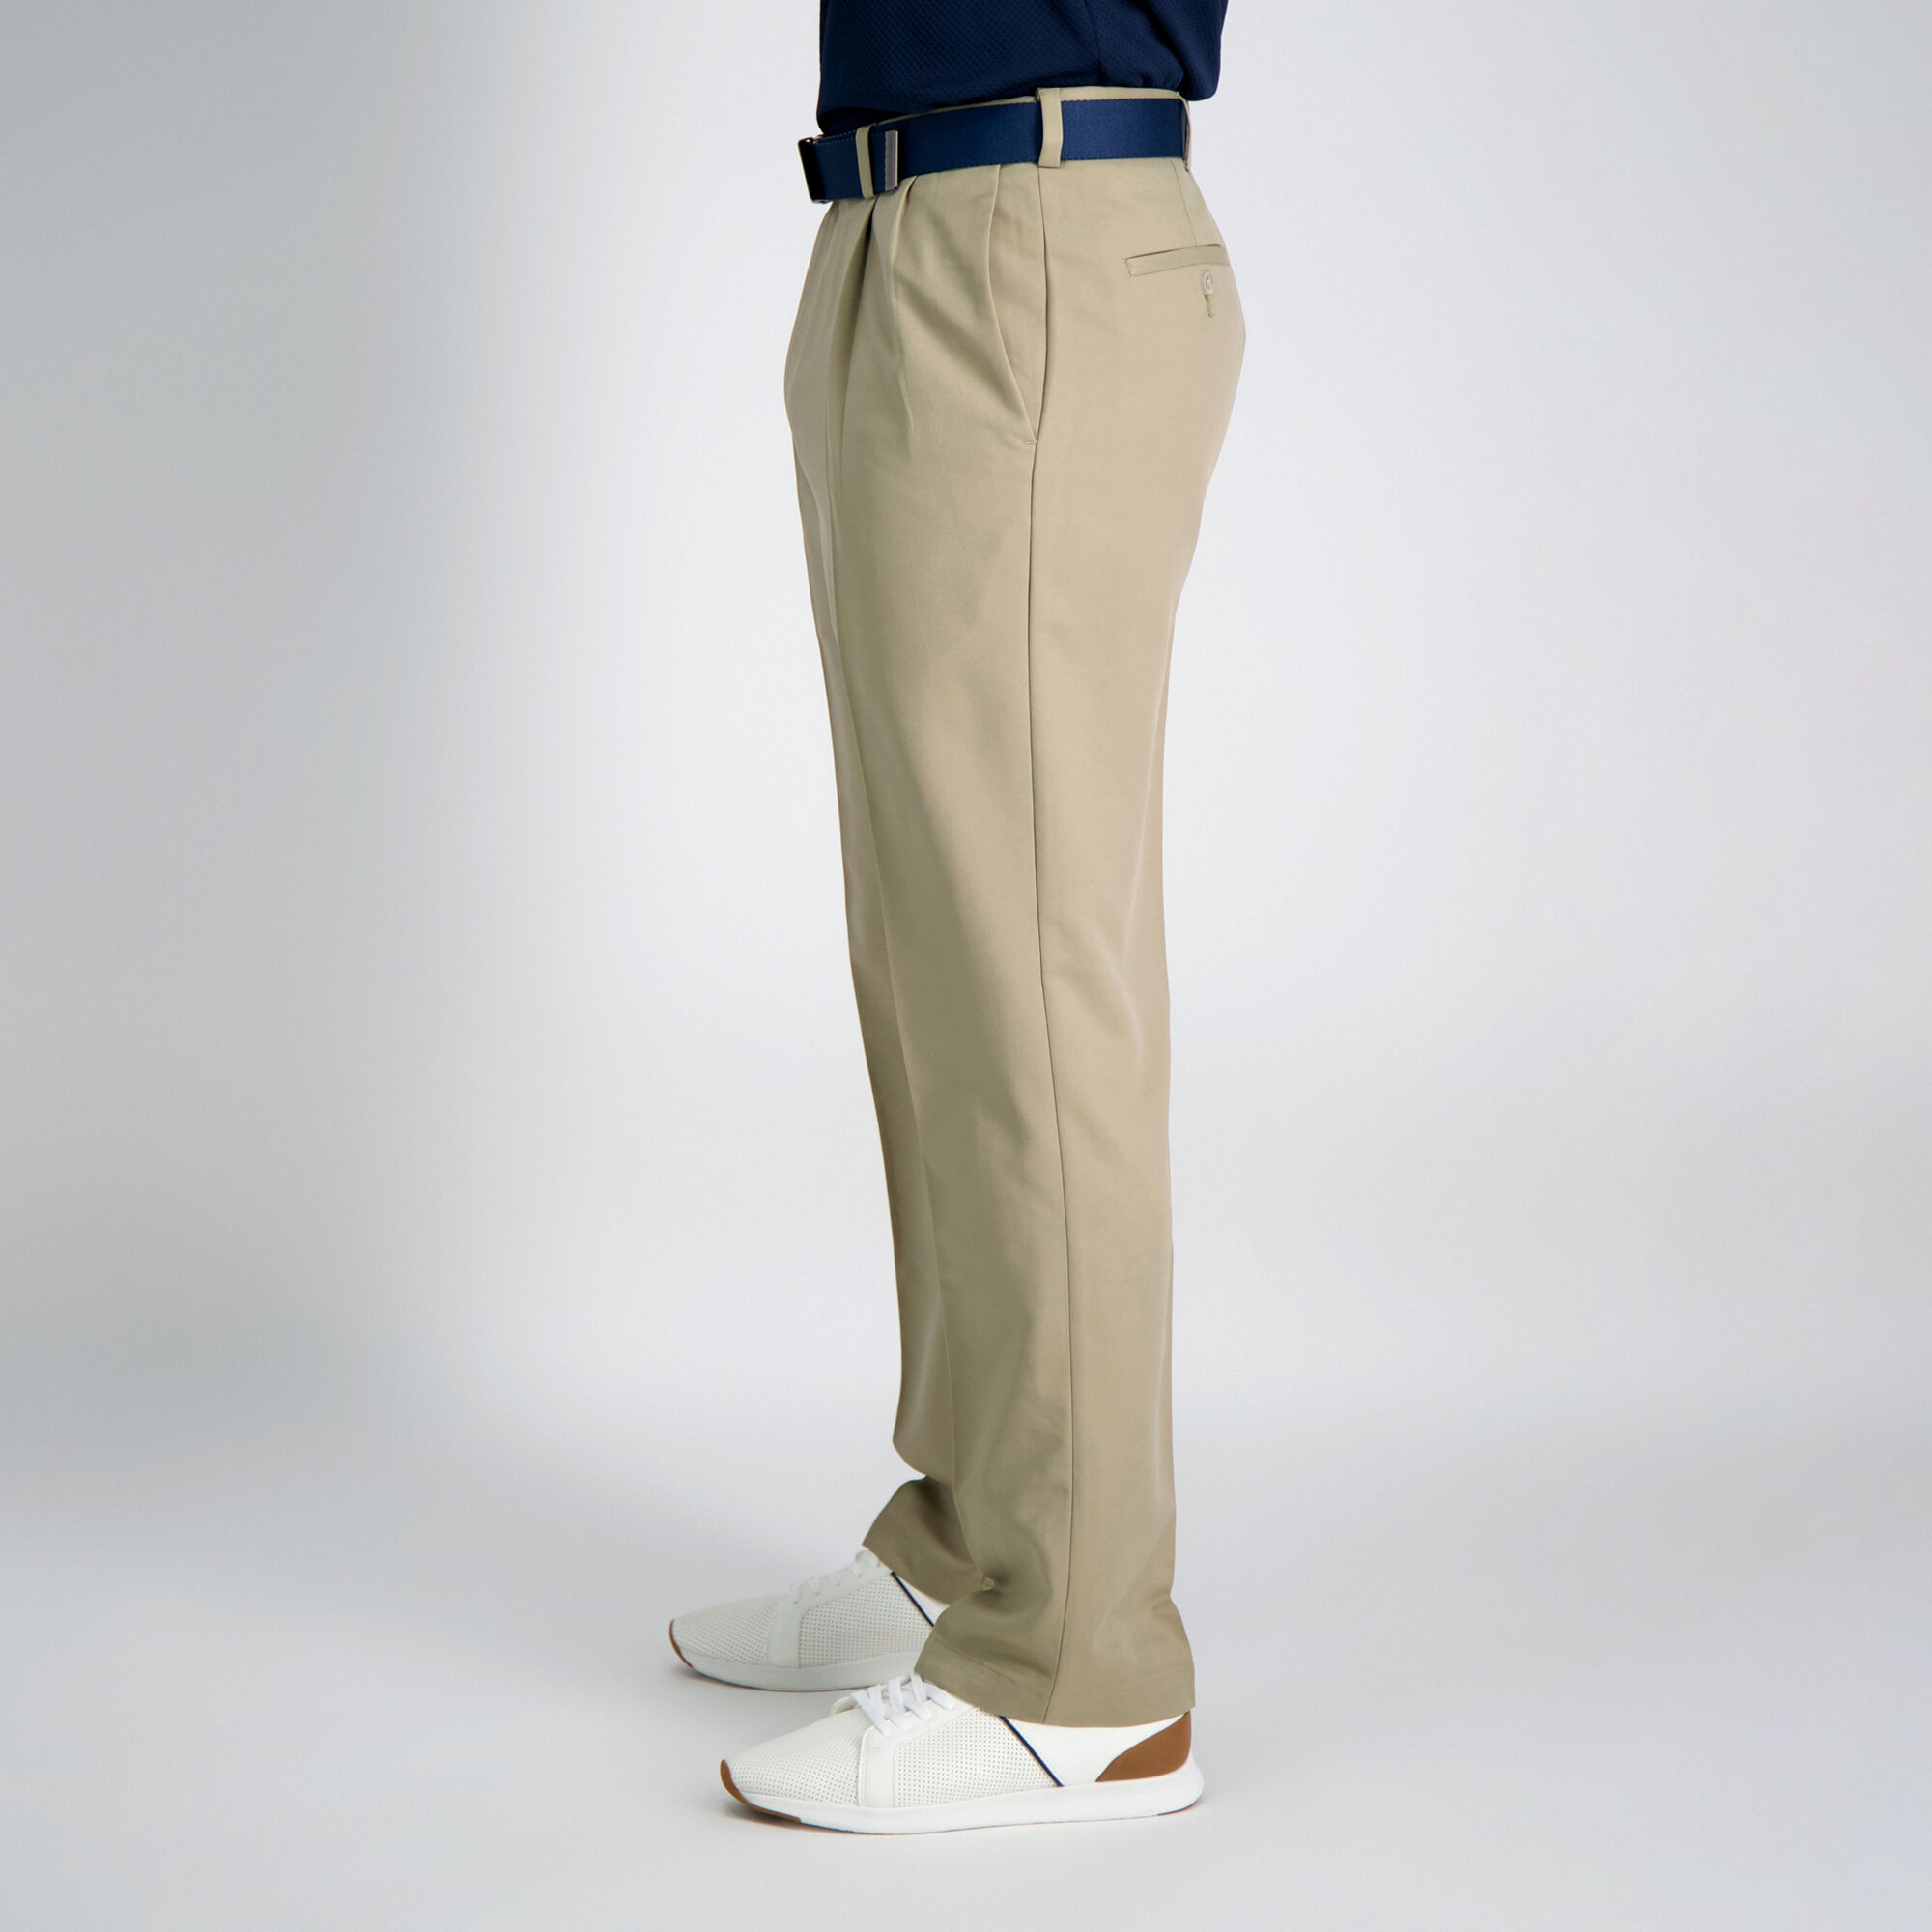 Haggar Pantalon Cool 18 pour homme Uni Taille L Taille confortable dissimulée 